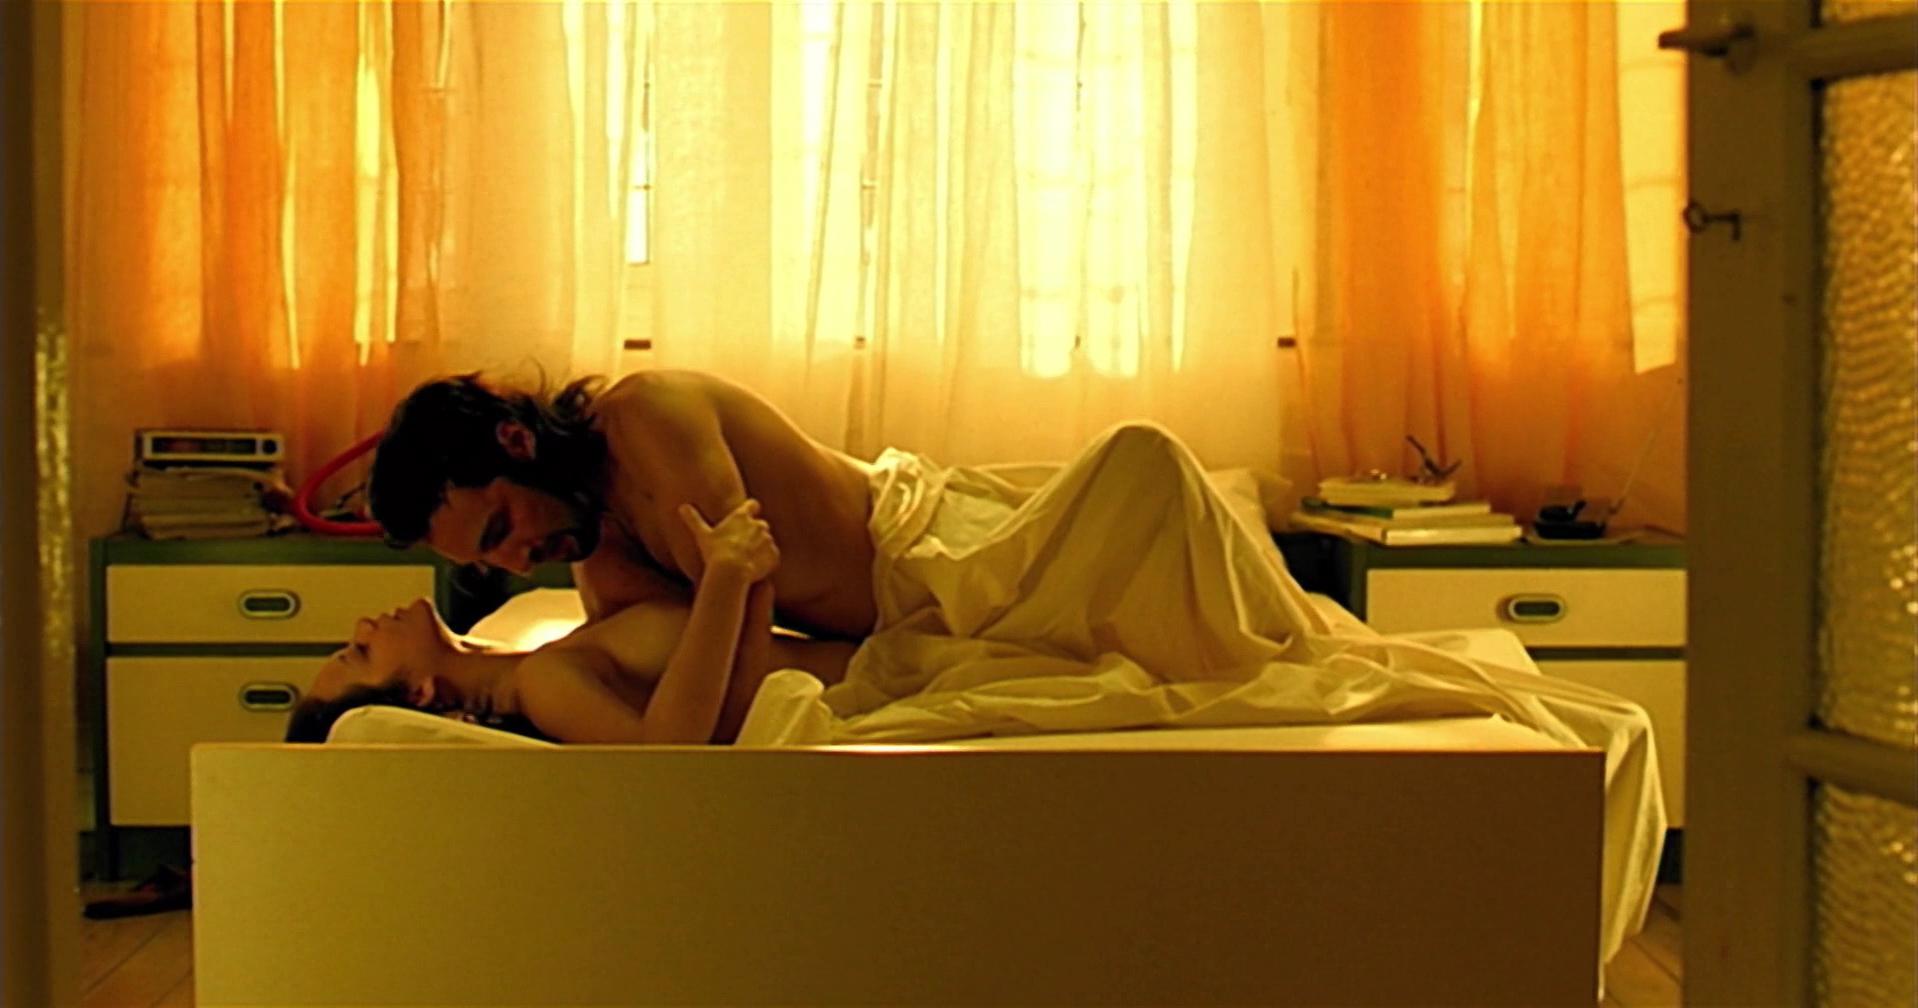 Nude Video Celebs Actress Marion Cotillard